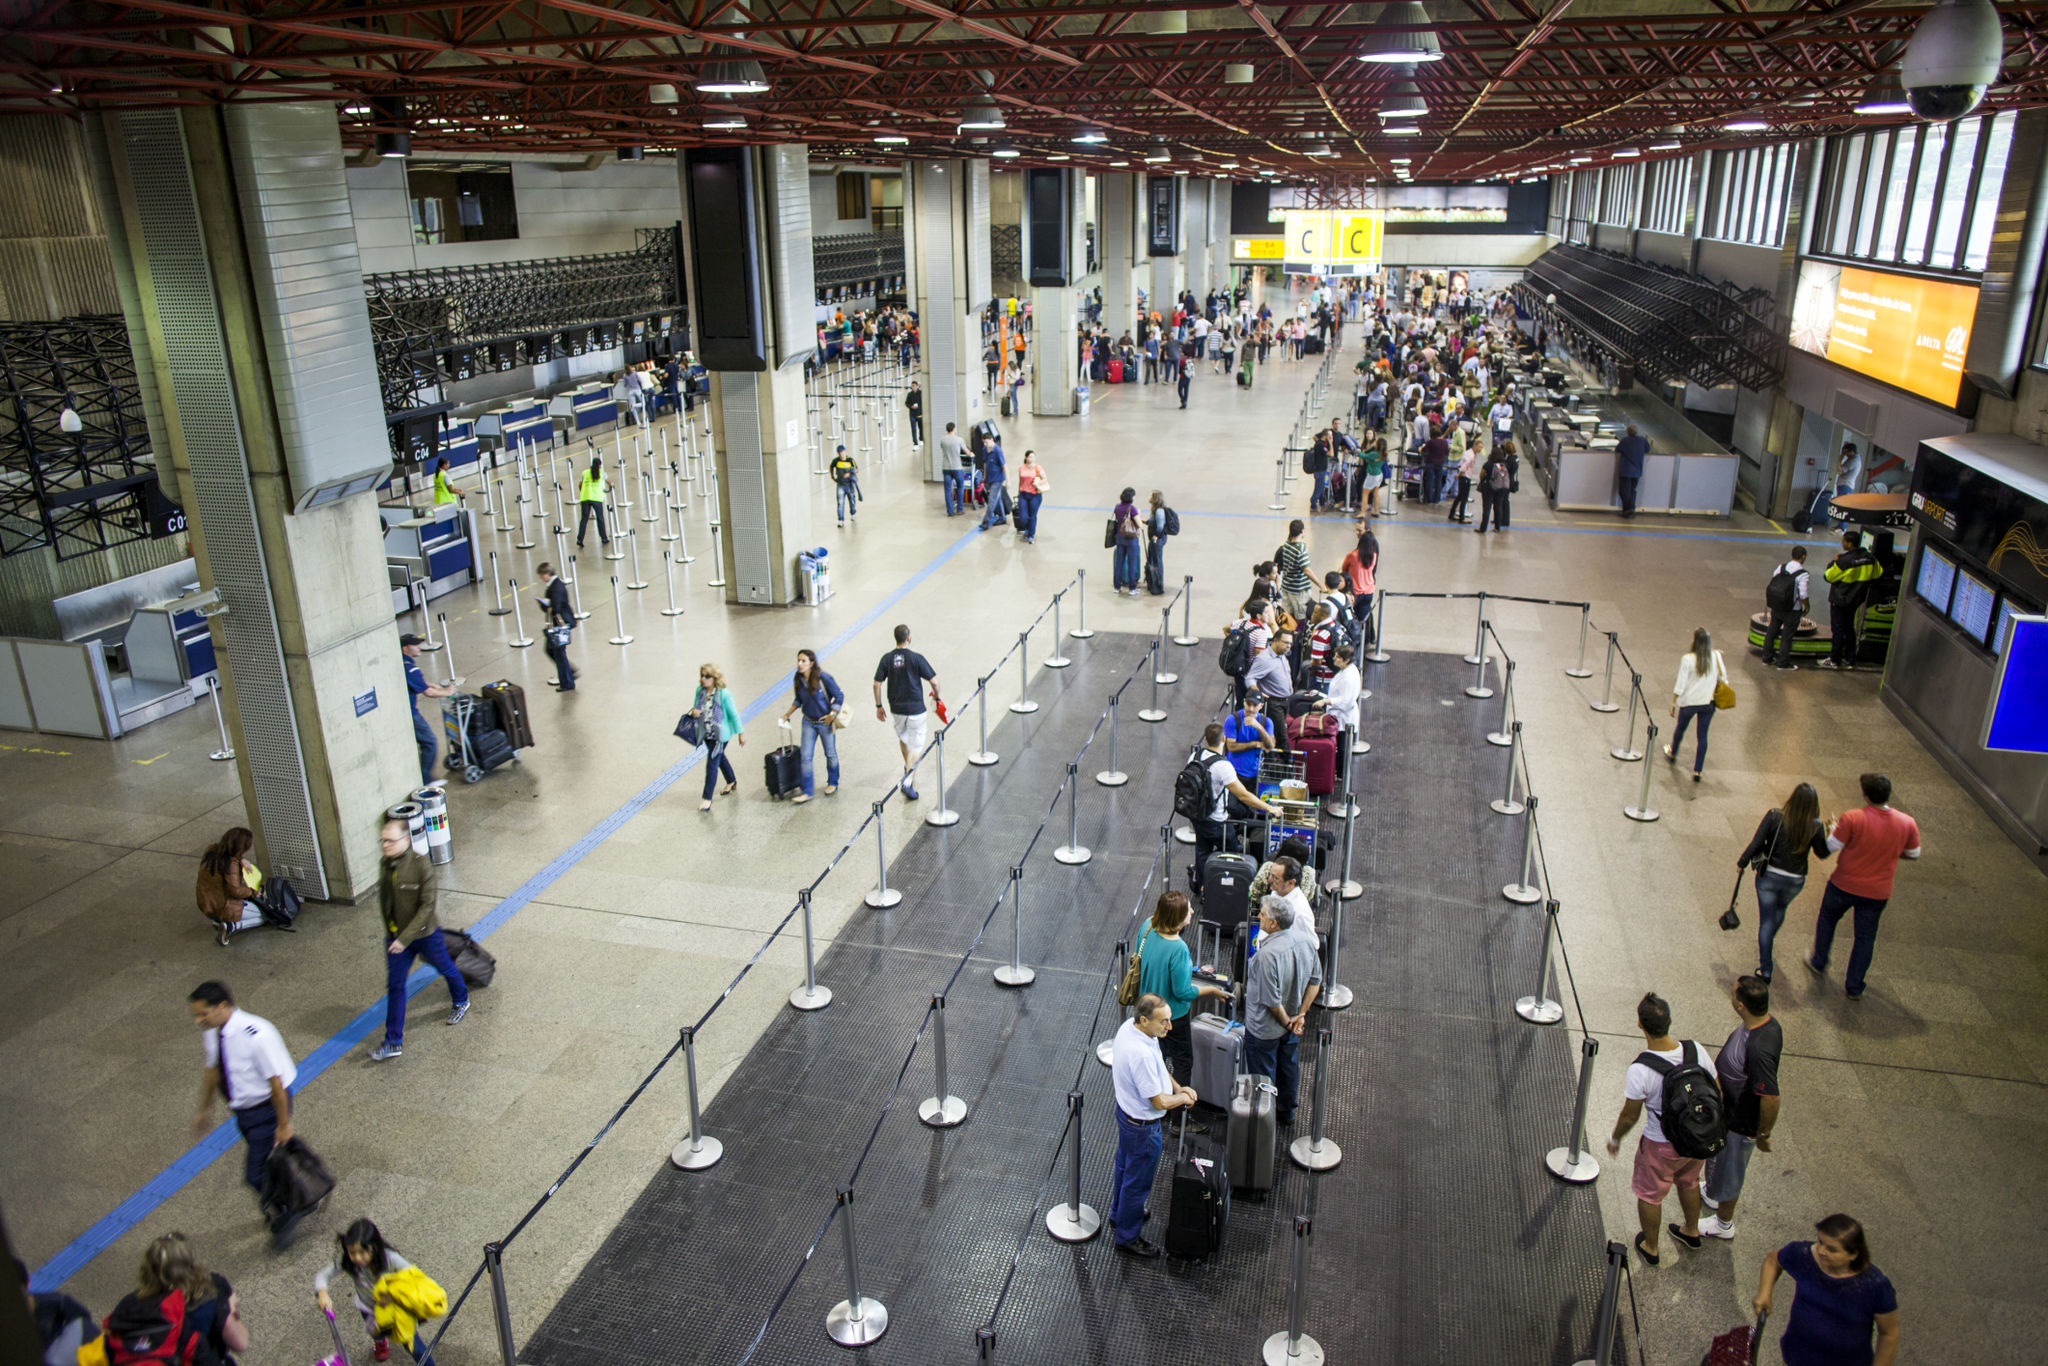 Aeroporto Internacional de Guarulhos, em São Paulo, movimentou 3 milhões de passageiros em julho | Imagem do saguão do aeroporto | Conexão123